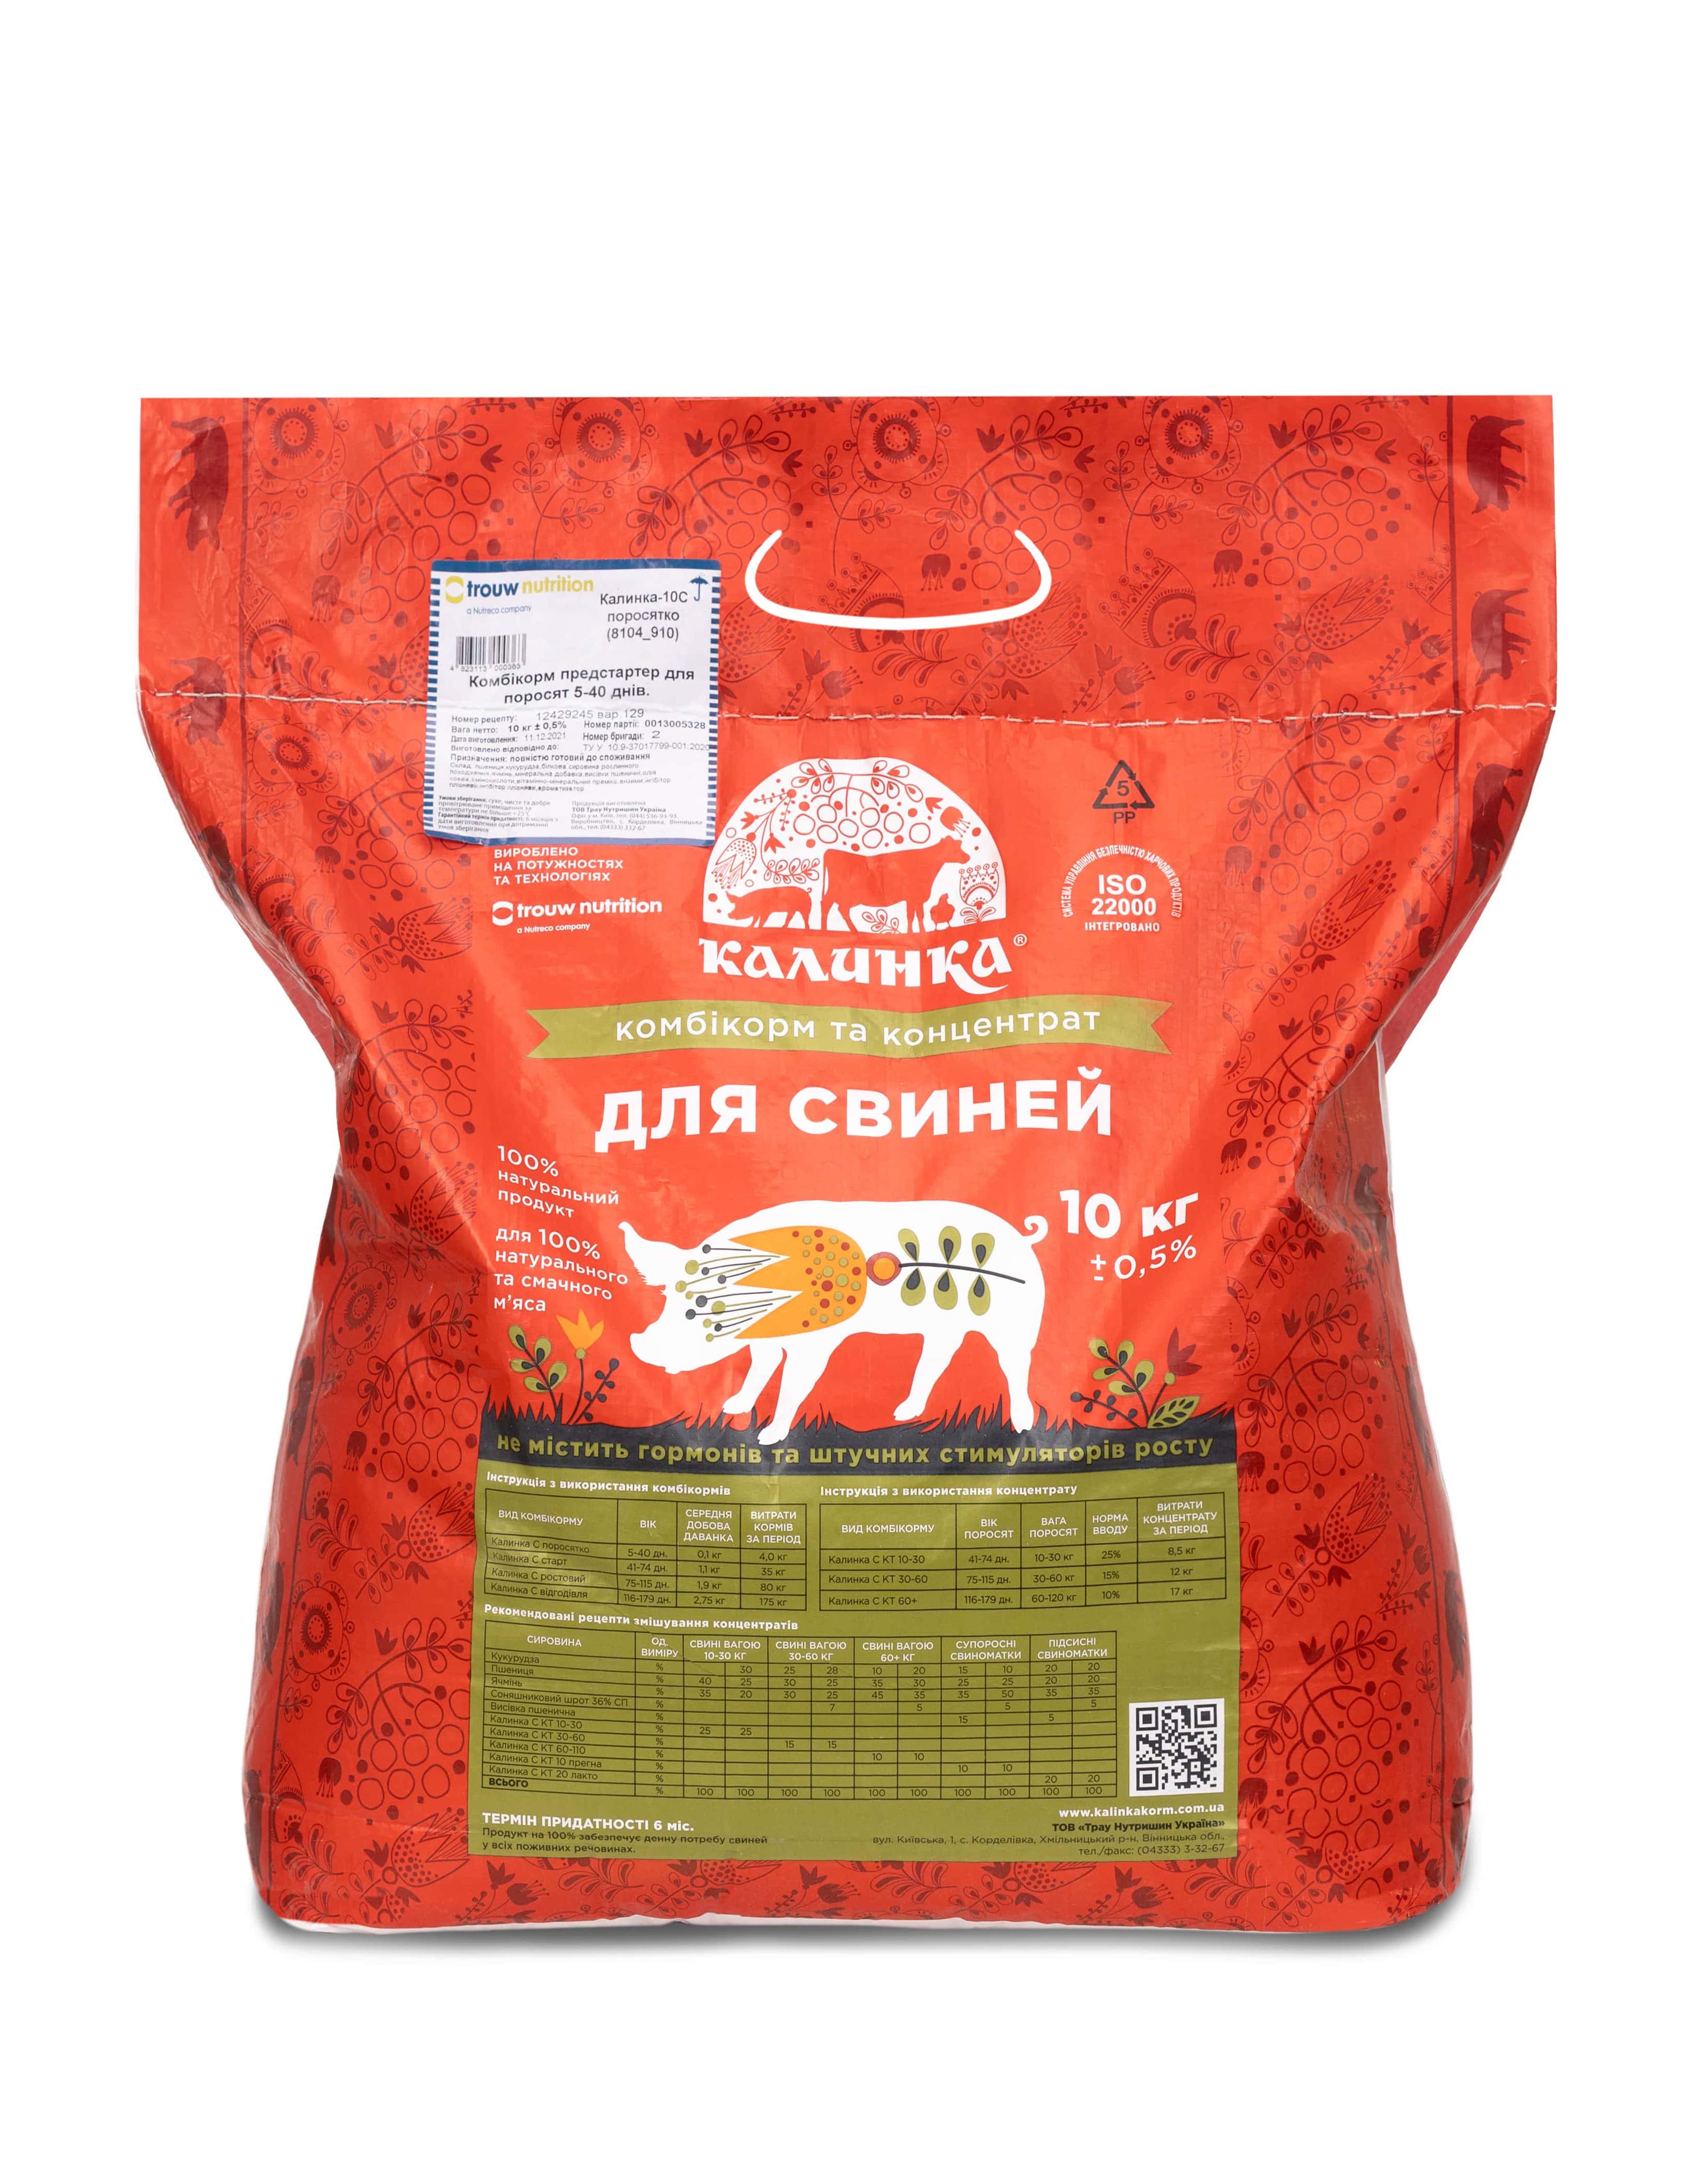 Калинка-10С КТ 30-60 (8113_10) (БВМД) для свиней 30-60 кг15%